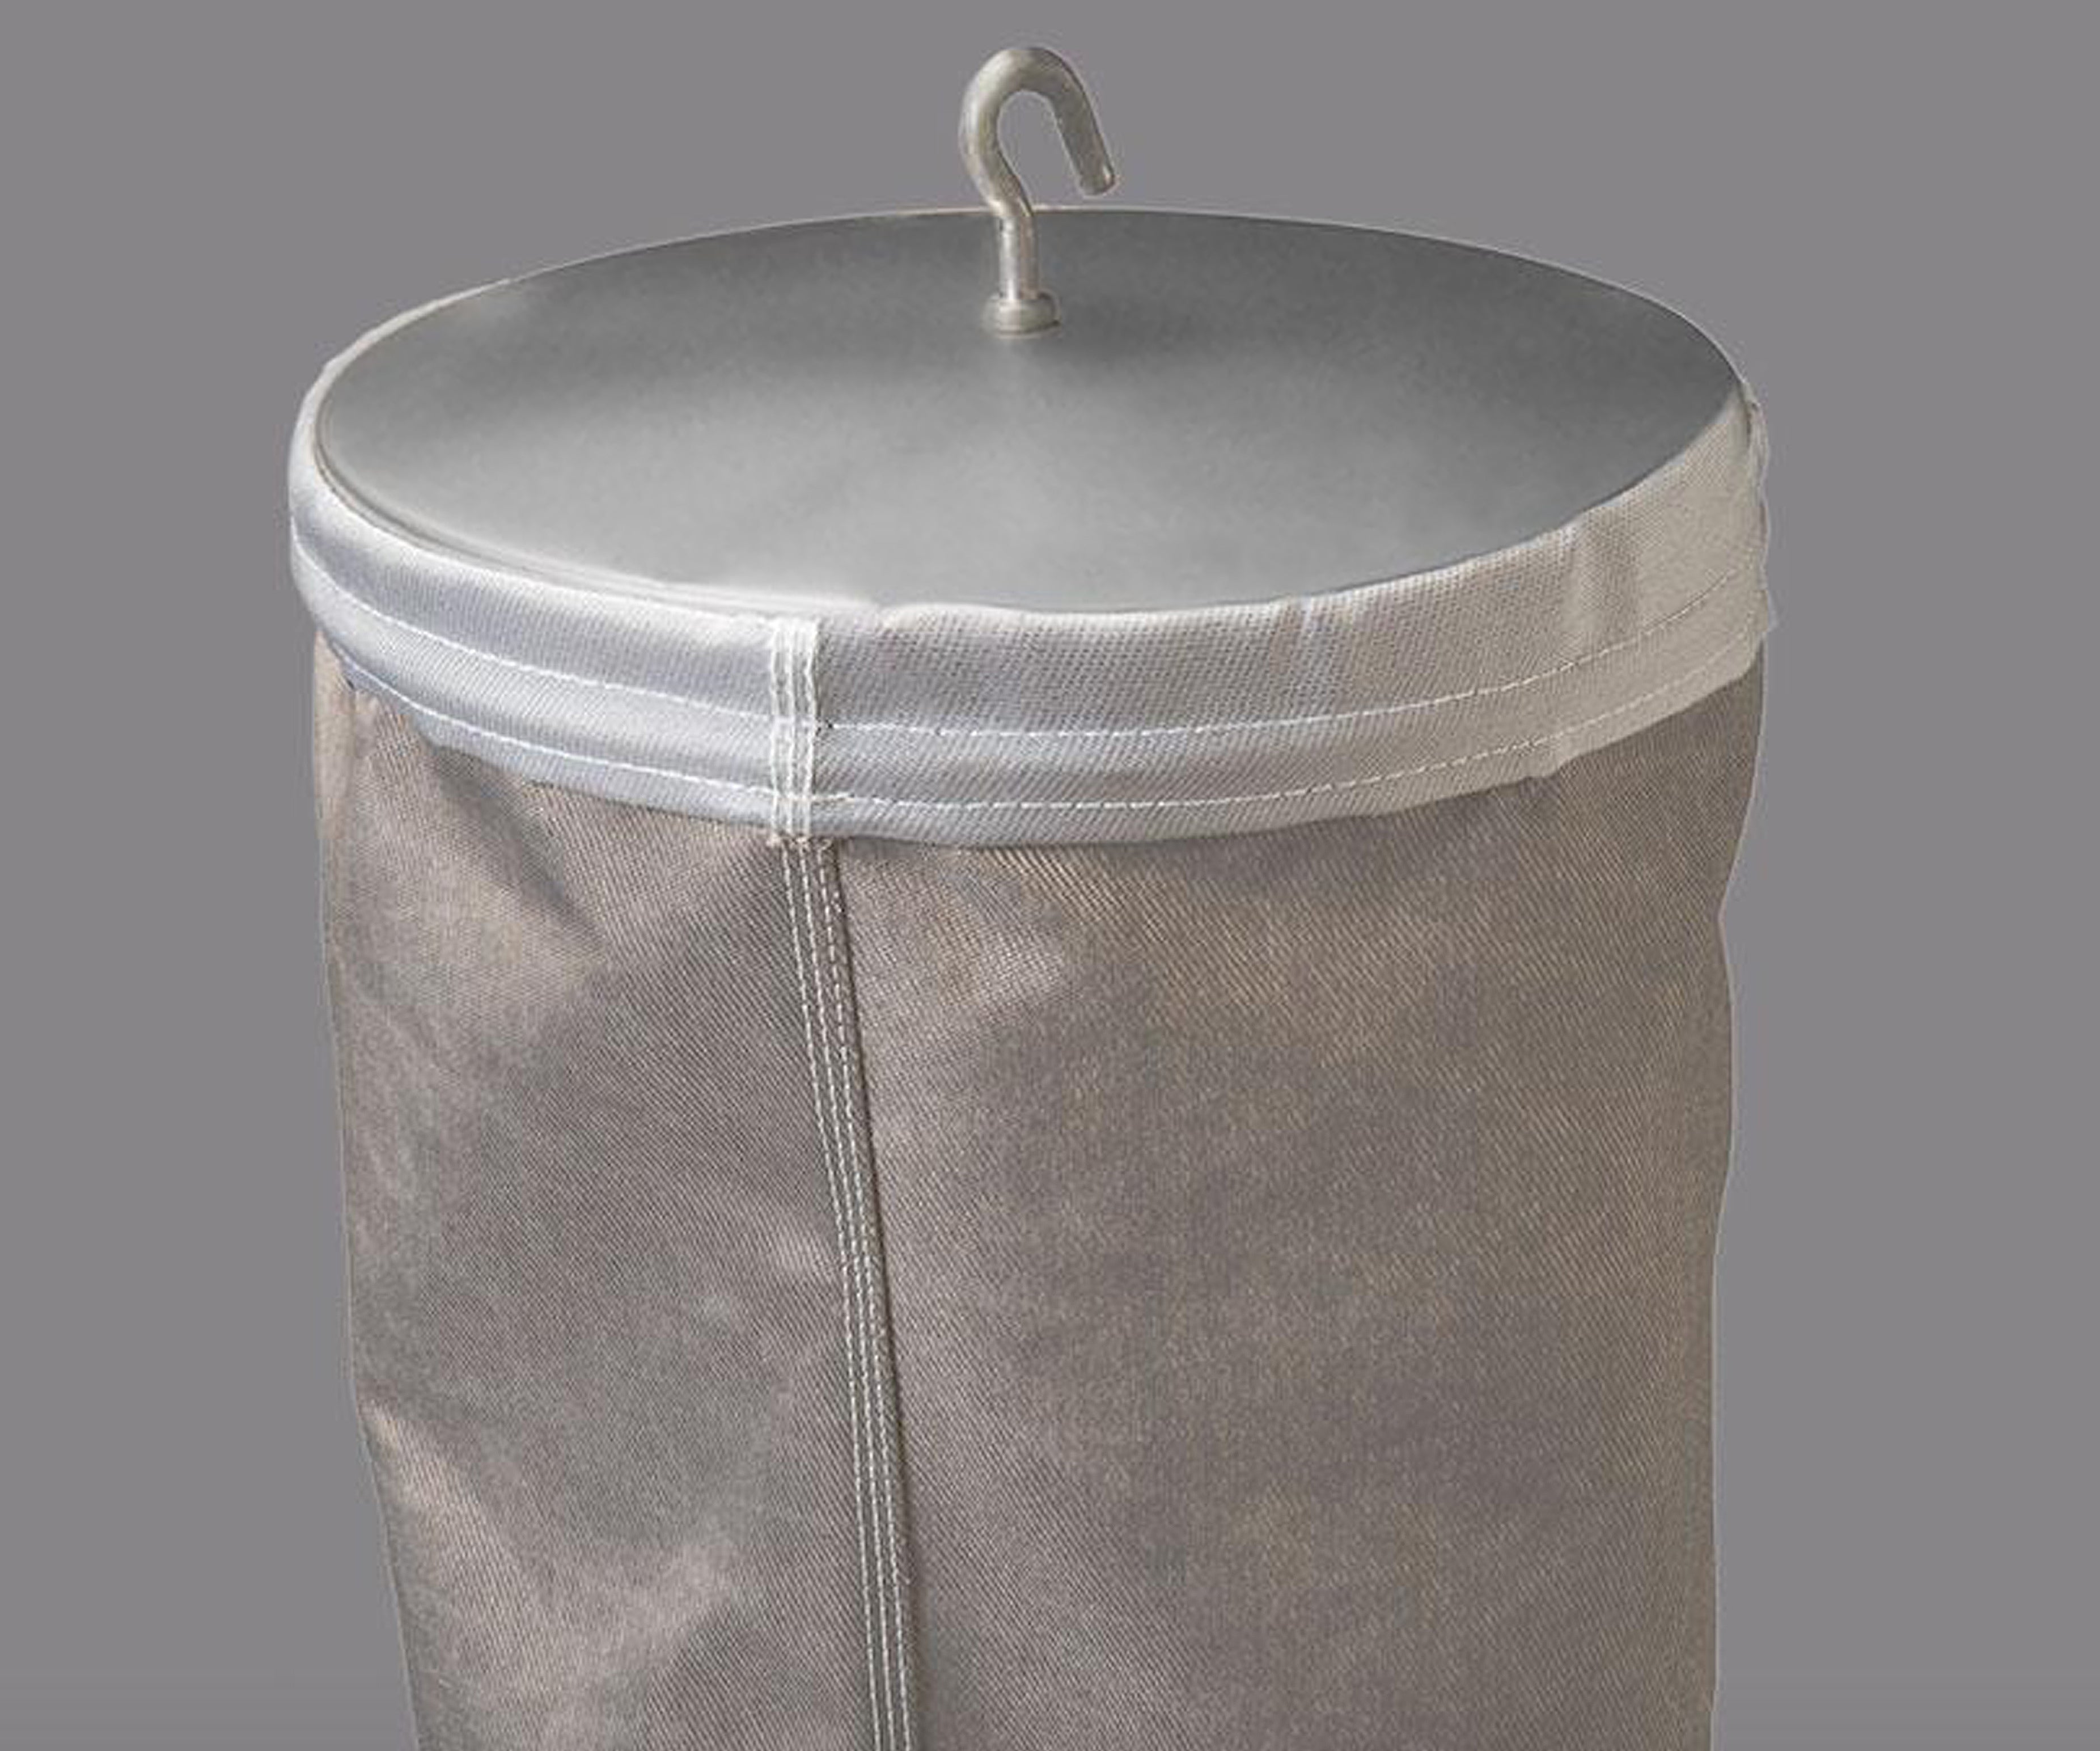 Nuove maniche filtranti GORE® Low Drag Filter Bags a bassa resistenza